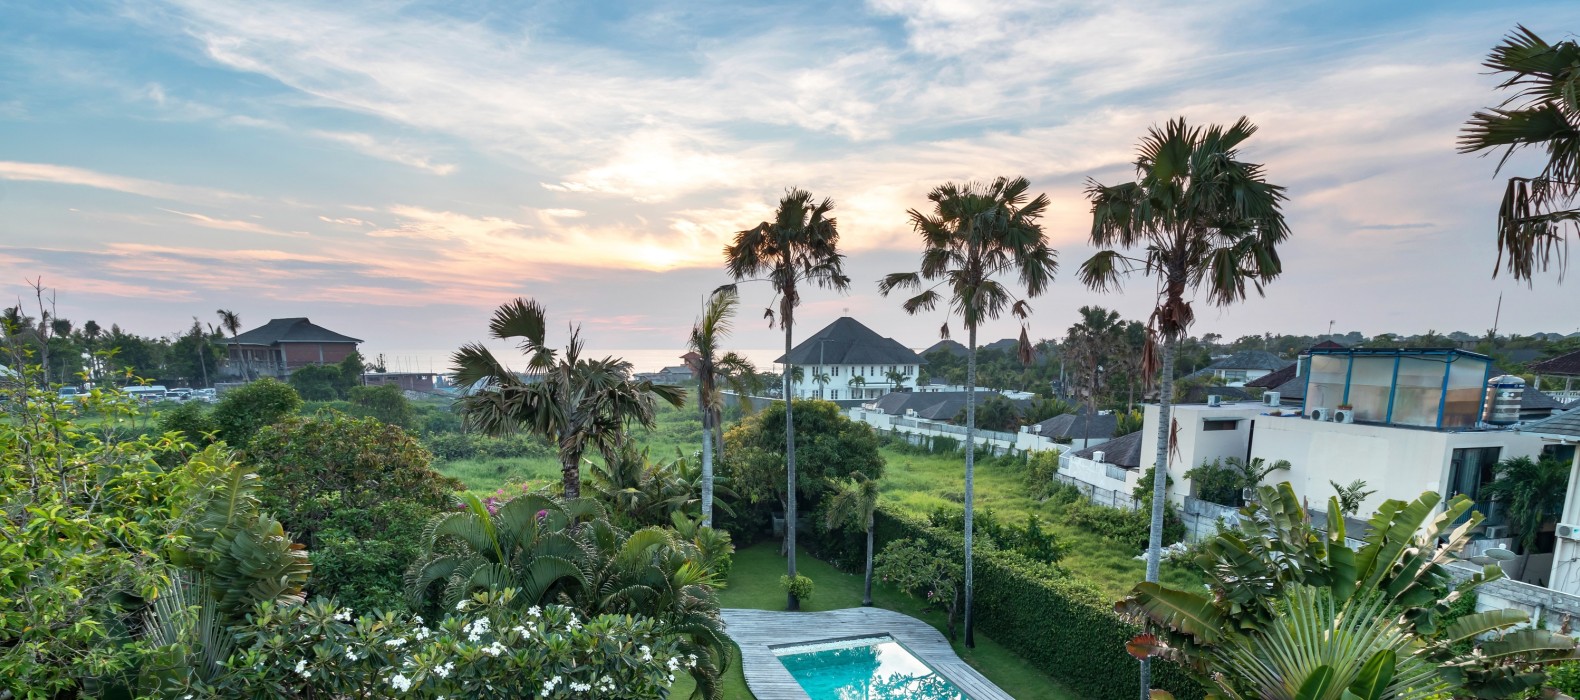 Landscape view of Villa Nuria in Bali